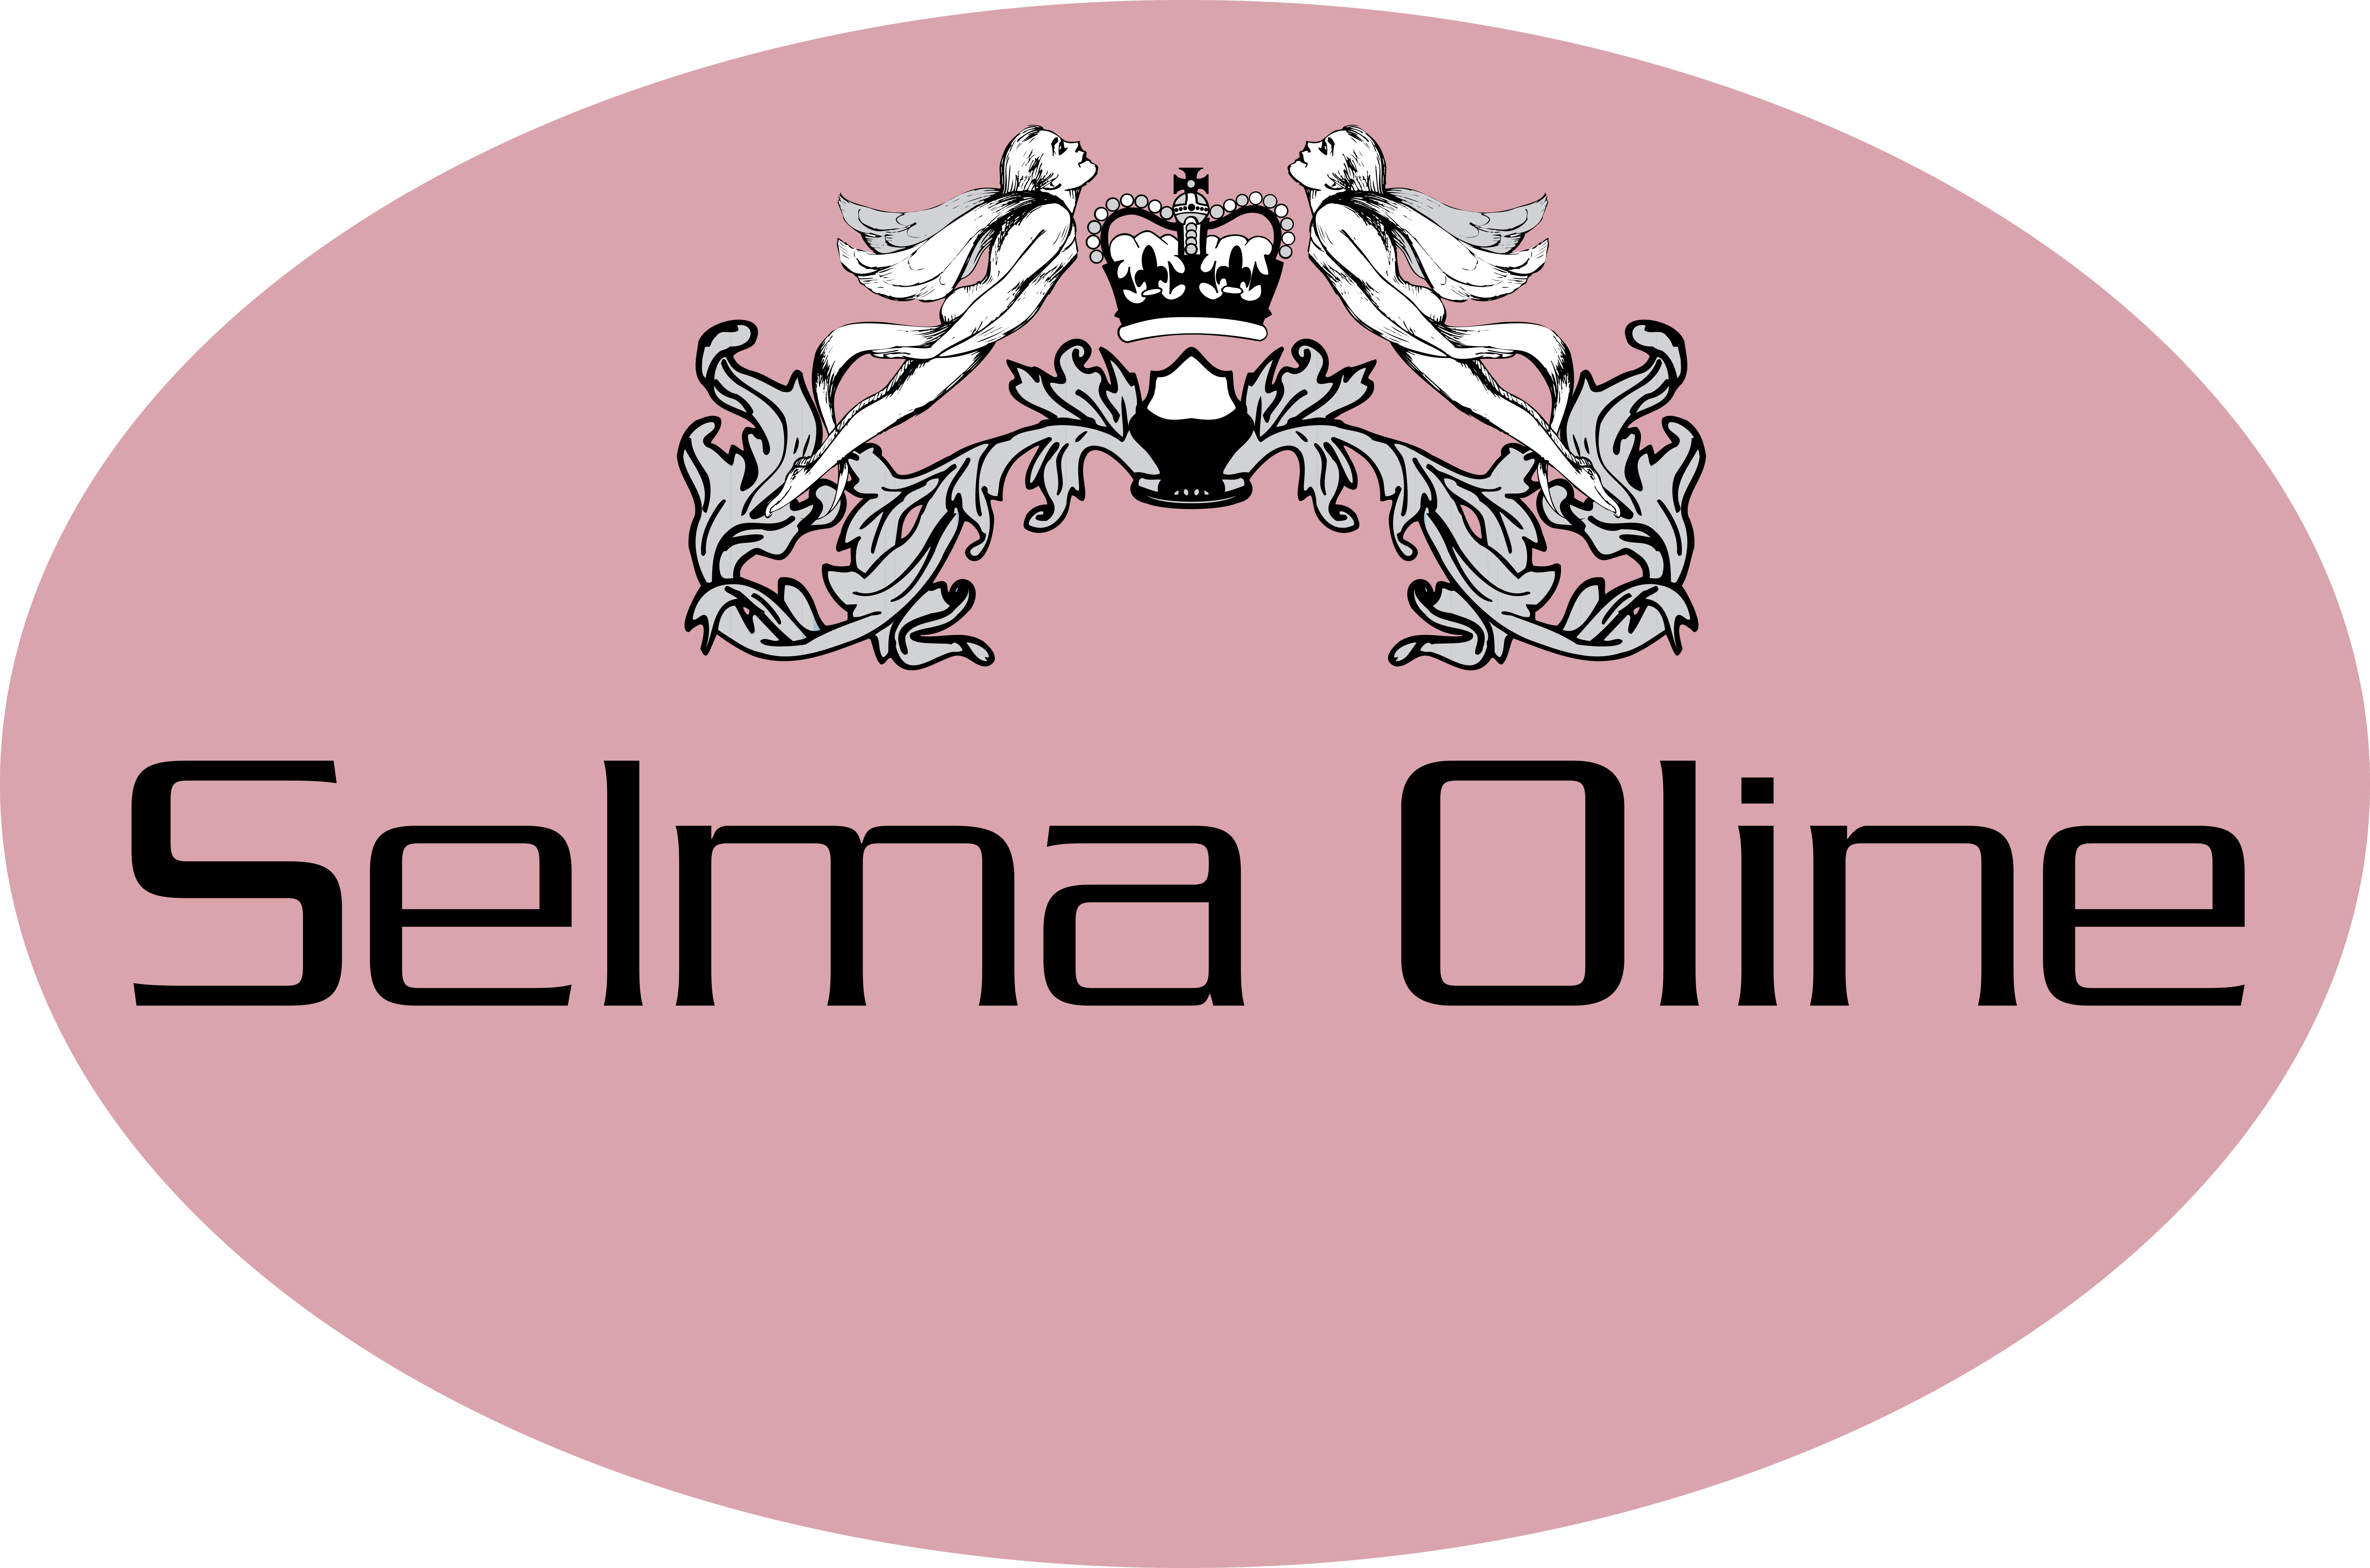 Selma Oline